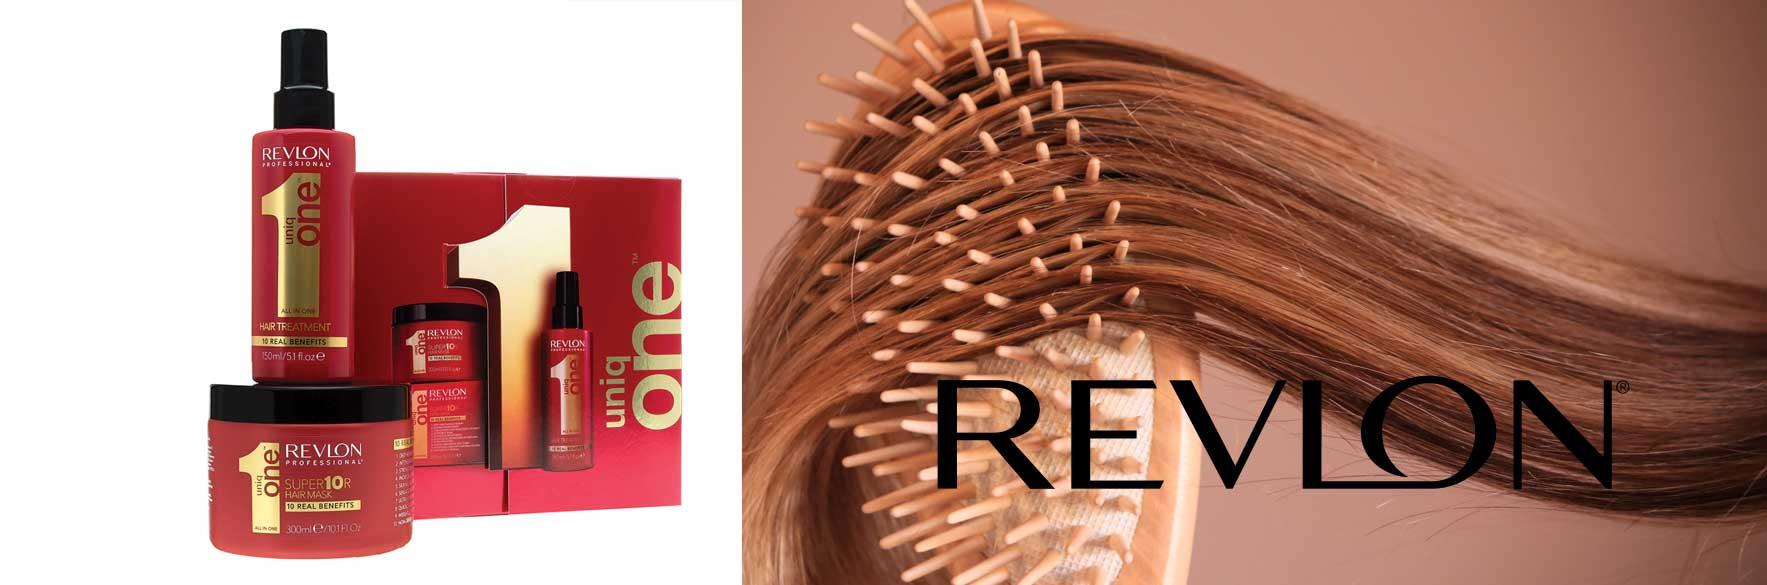 محصولات رولون REVLON امریکایی - آرایشی و بهداشتی